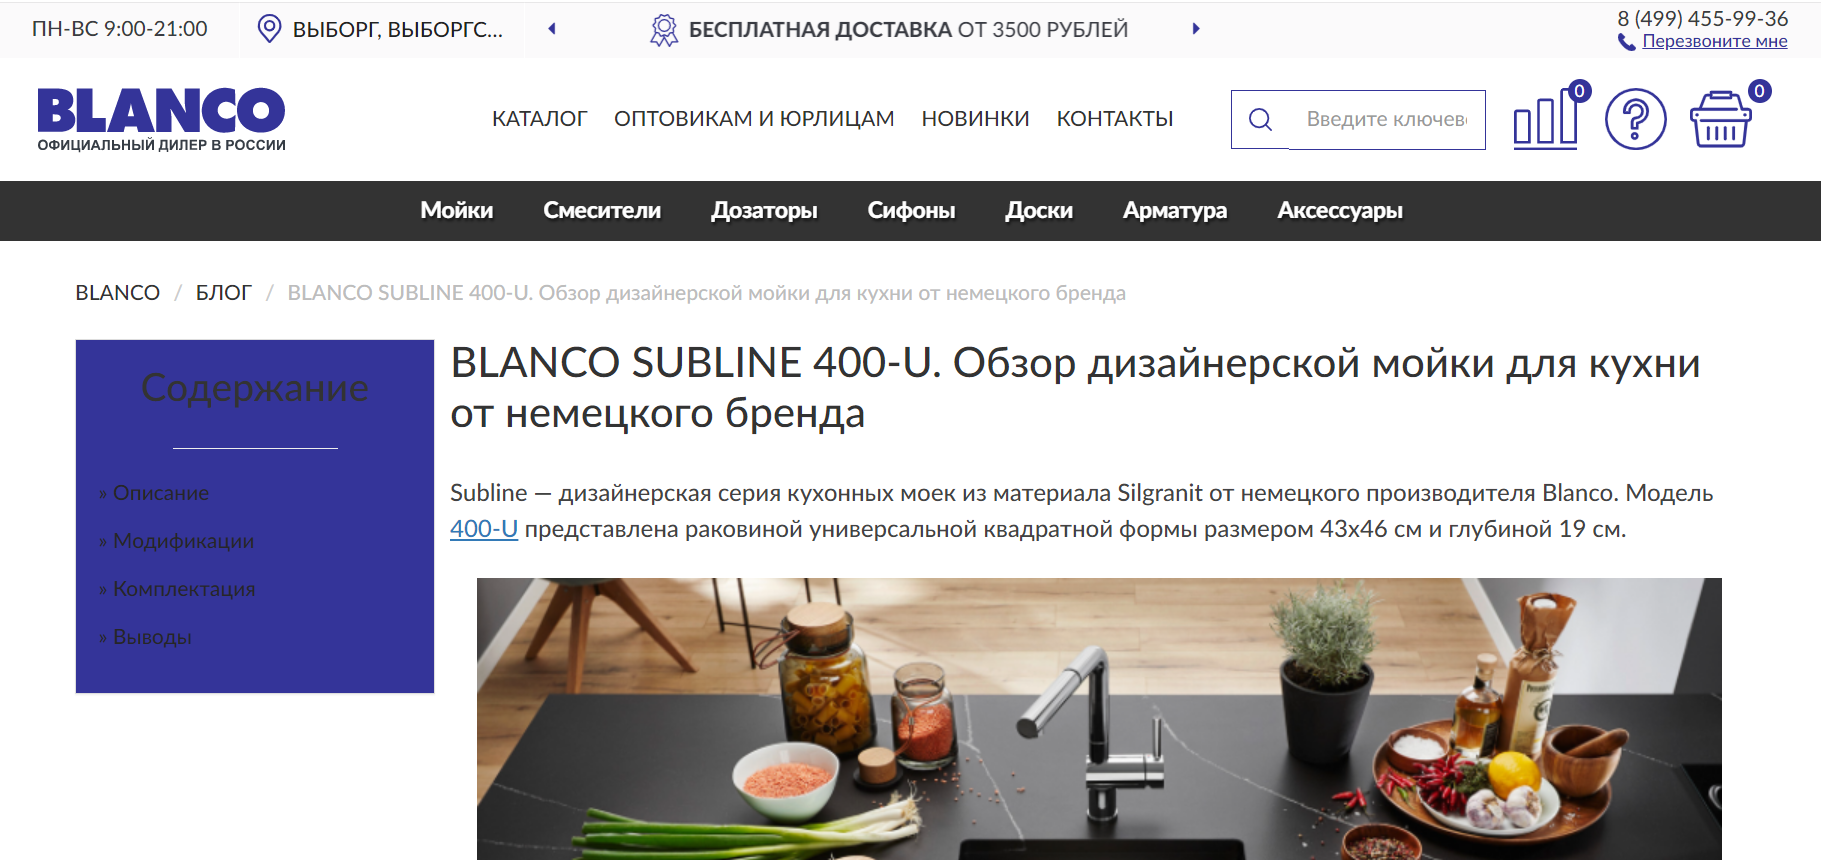 Blanco Subline 400-U. Обзор дизайнерской мойки для кухни от немецкого бренда